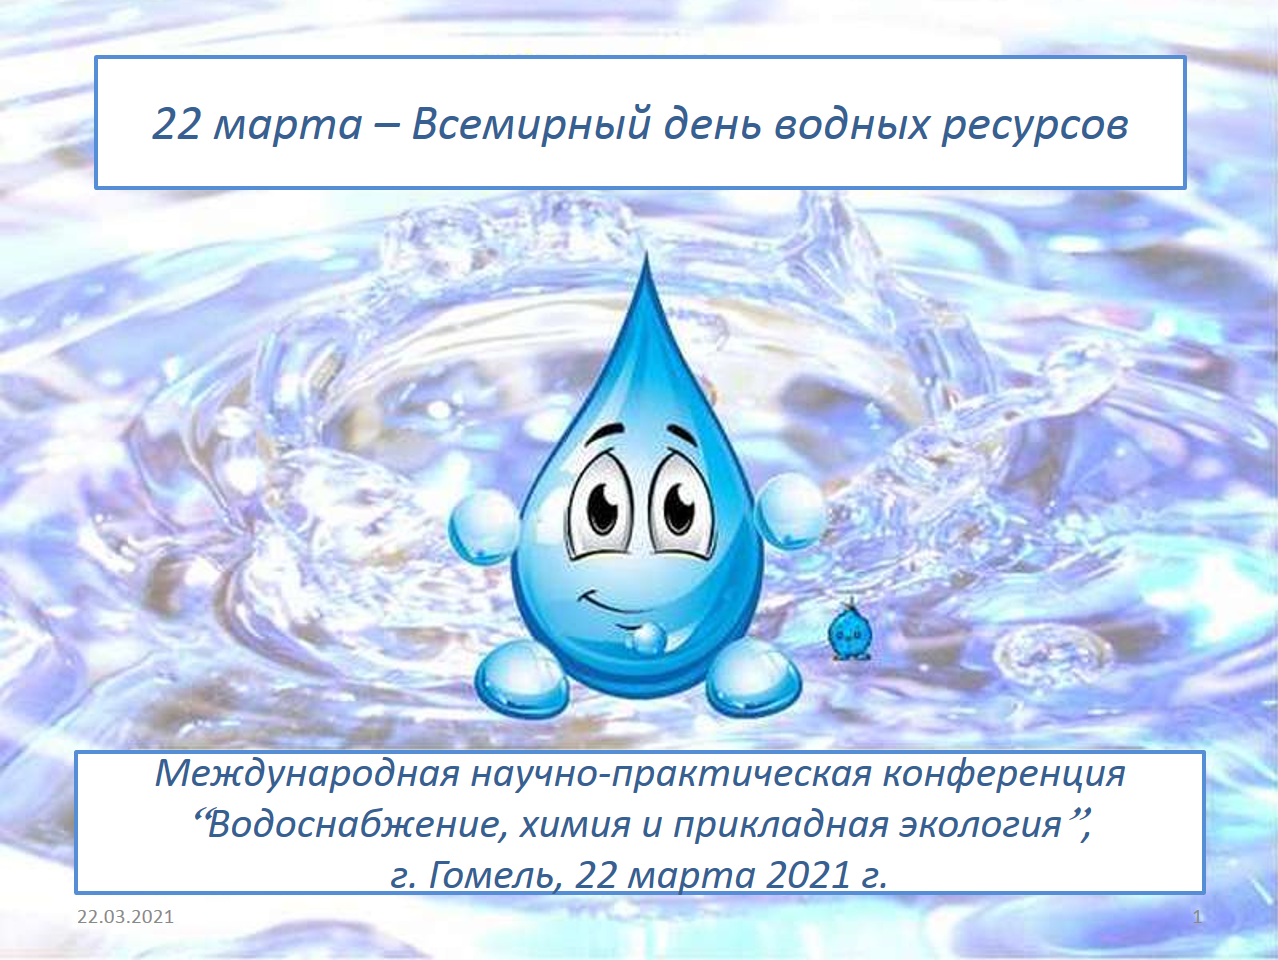 22 Марта отмечается Всемирный день воды